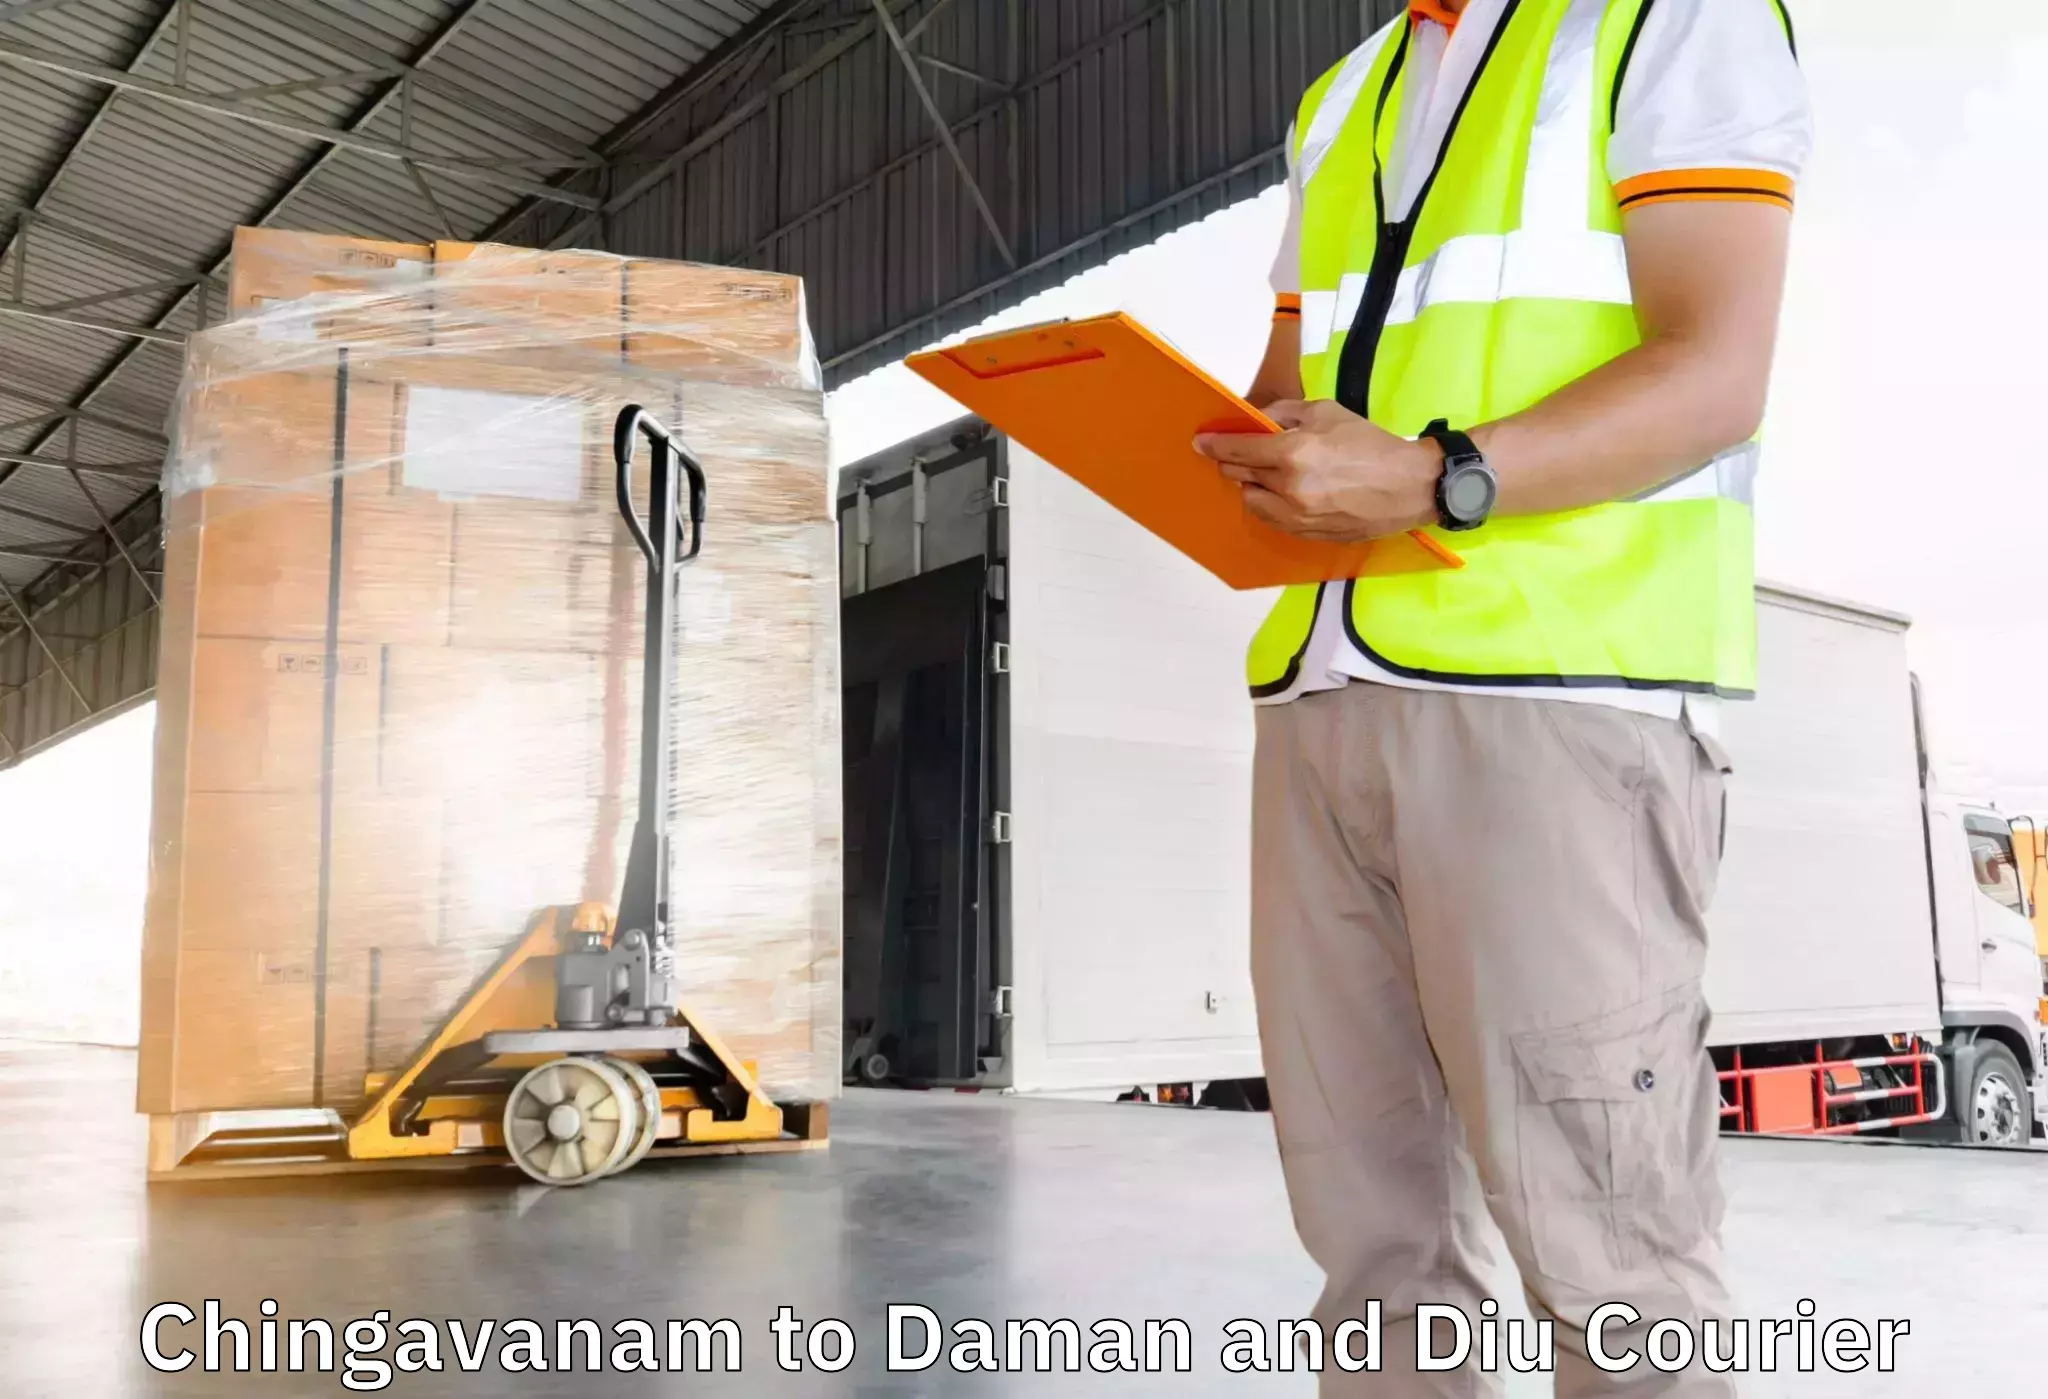 Furniture transport experts Chingavanam to Diu